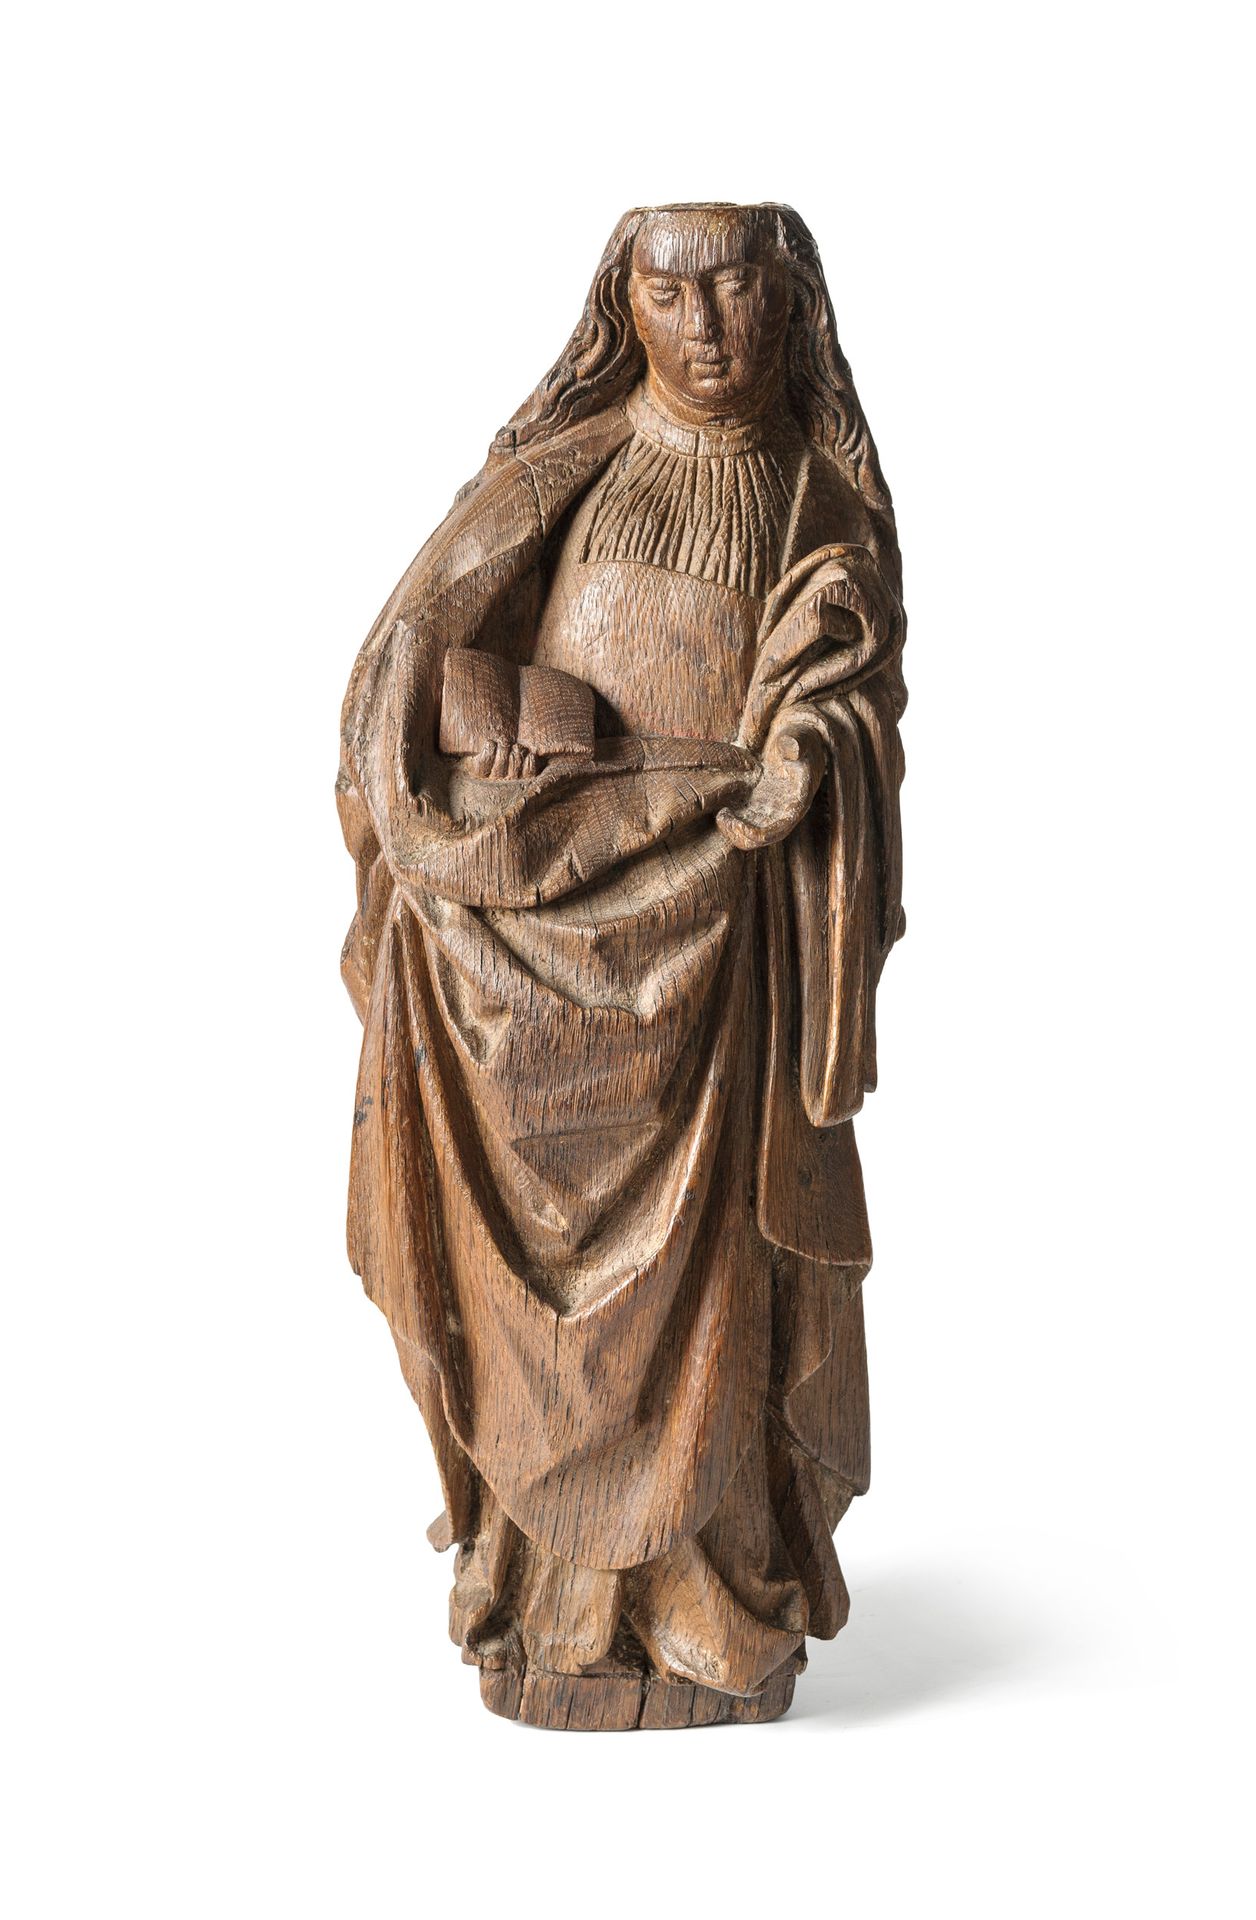 Null Sainte en chêne sculpté.

Haut. : 45 cm

(manques)